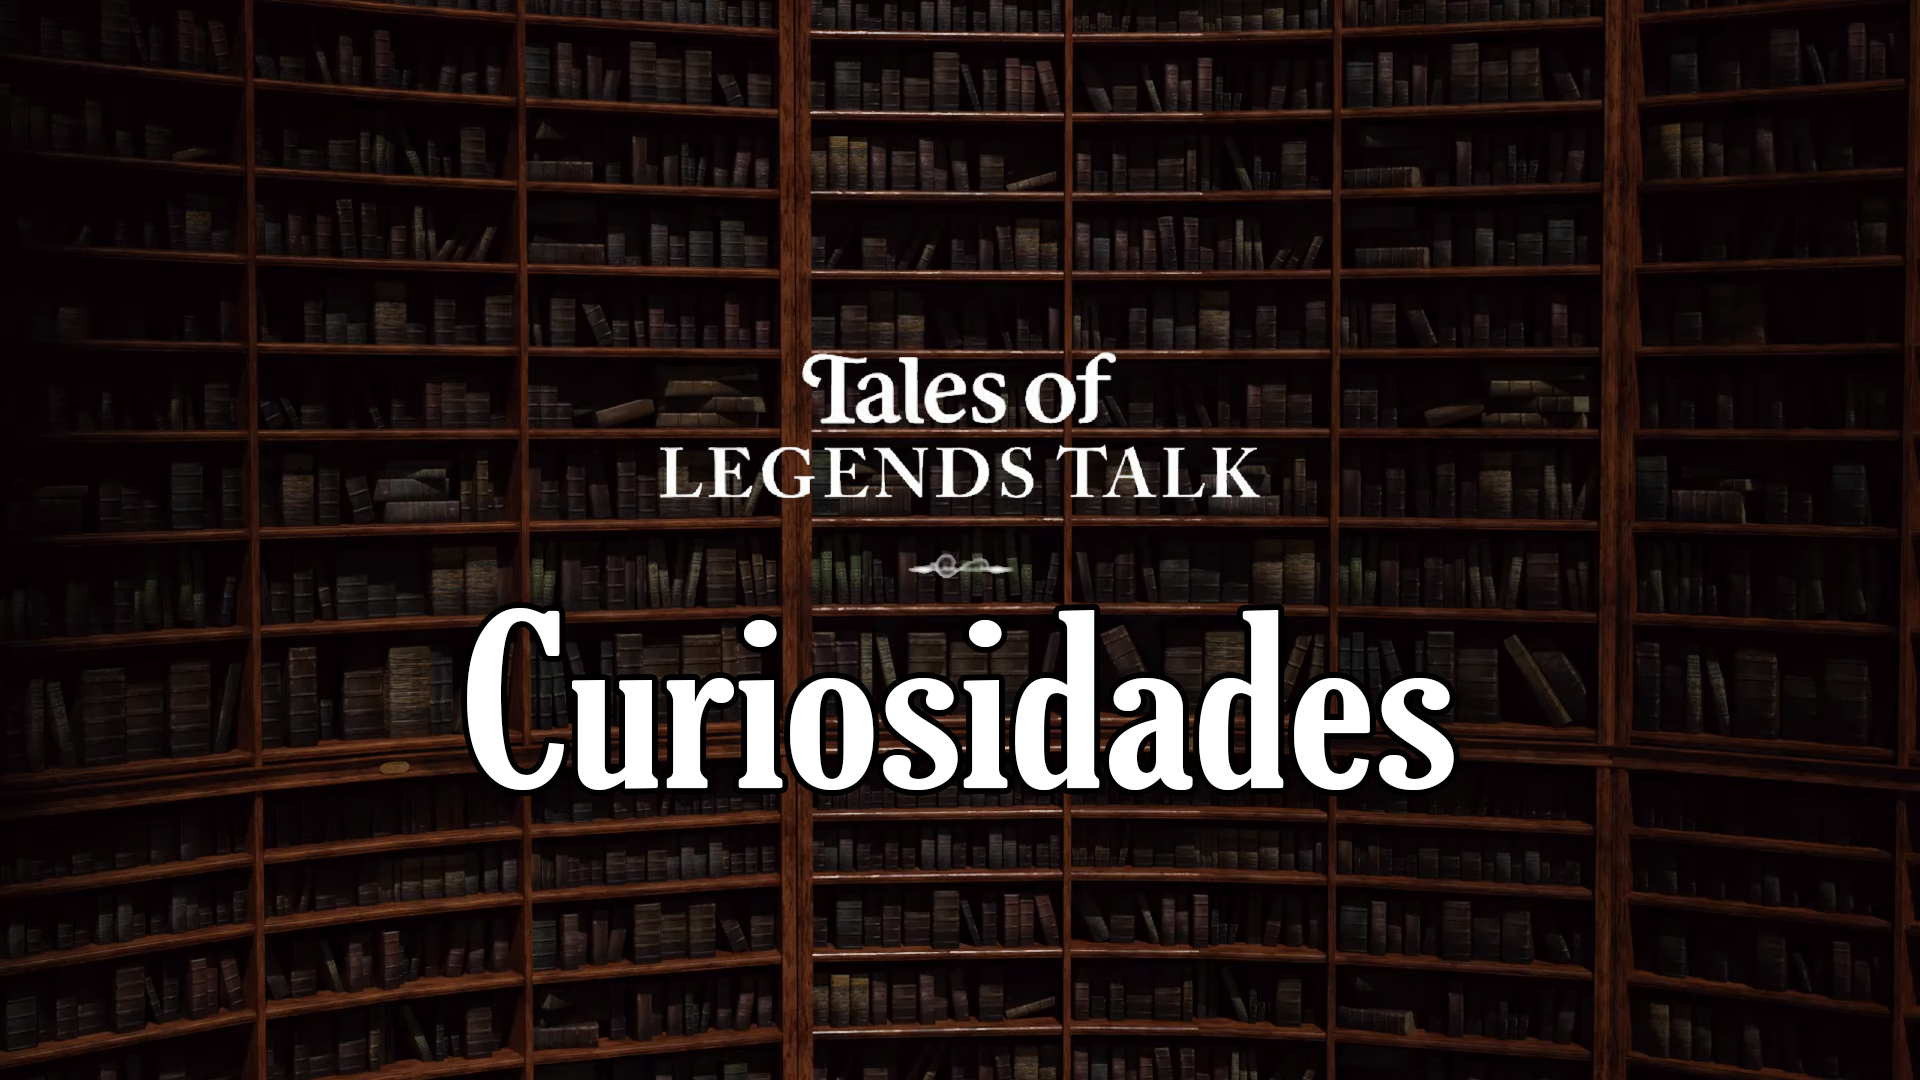 Curiosidades de las Tales of Legends Talk